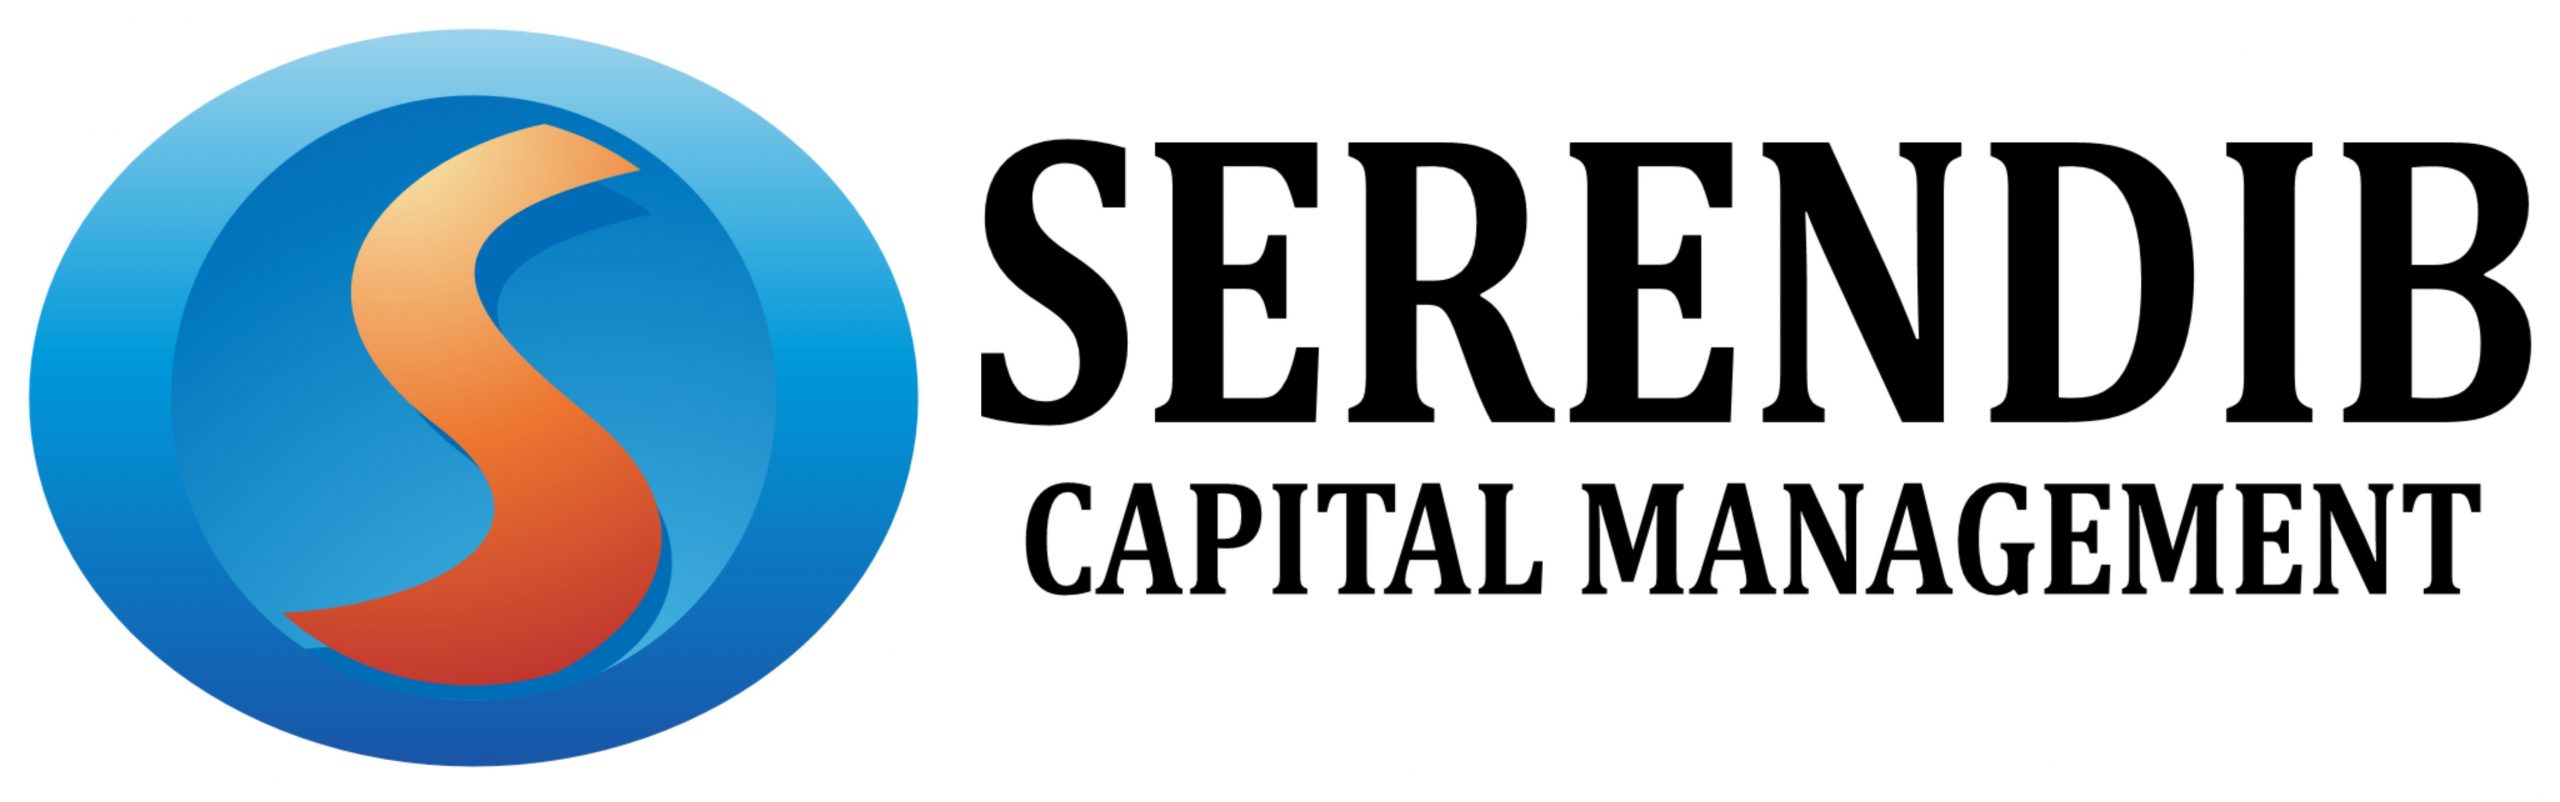 Serendib Capital Management